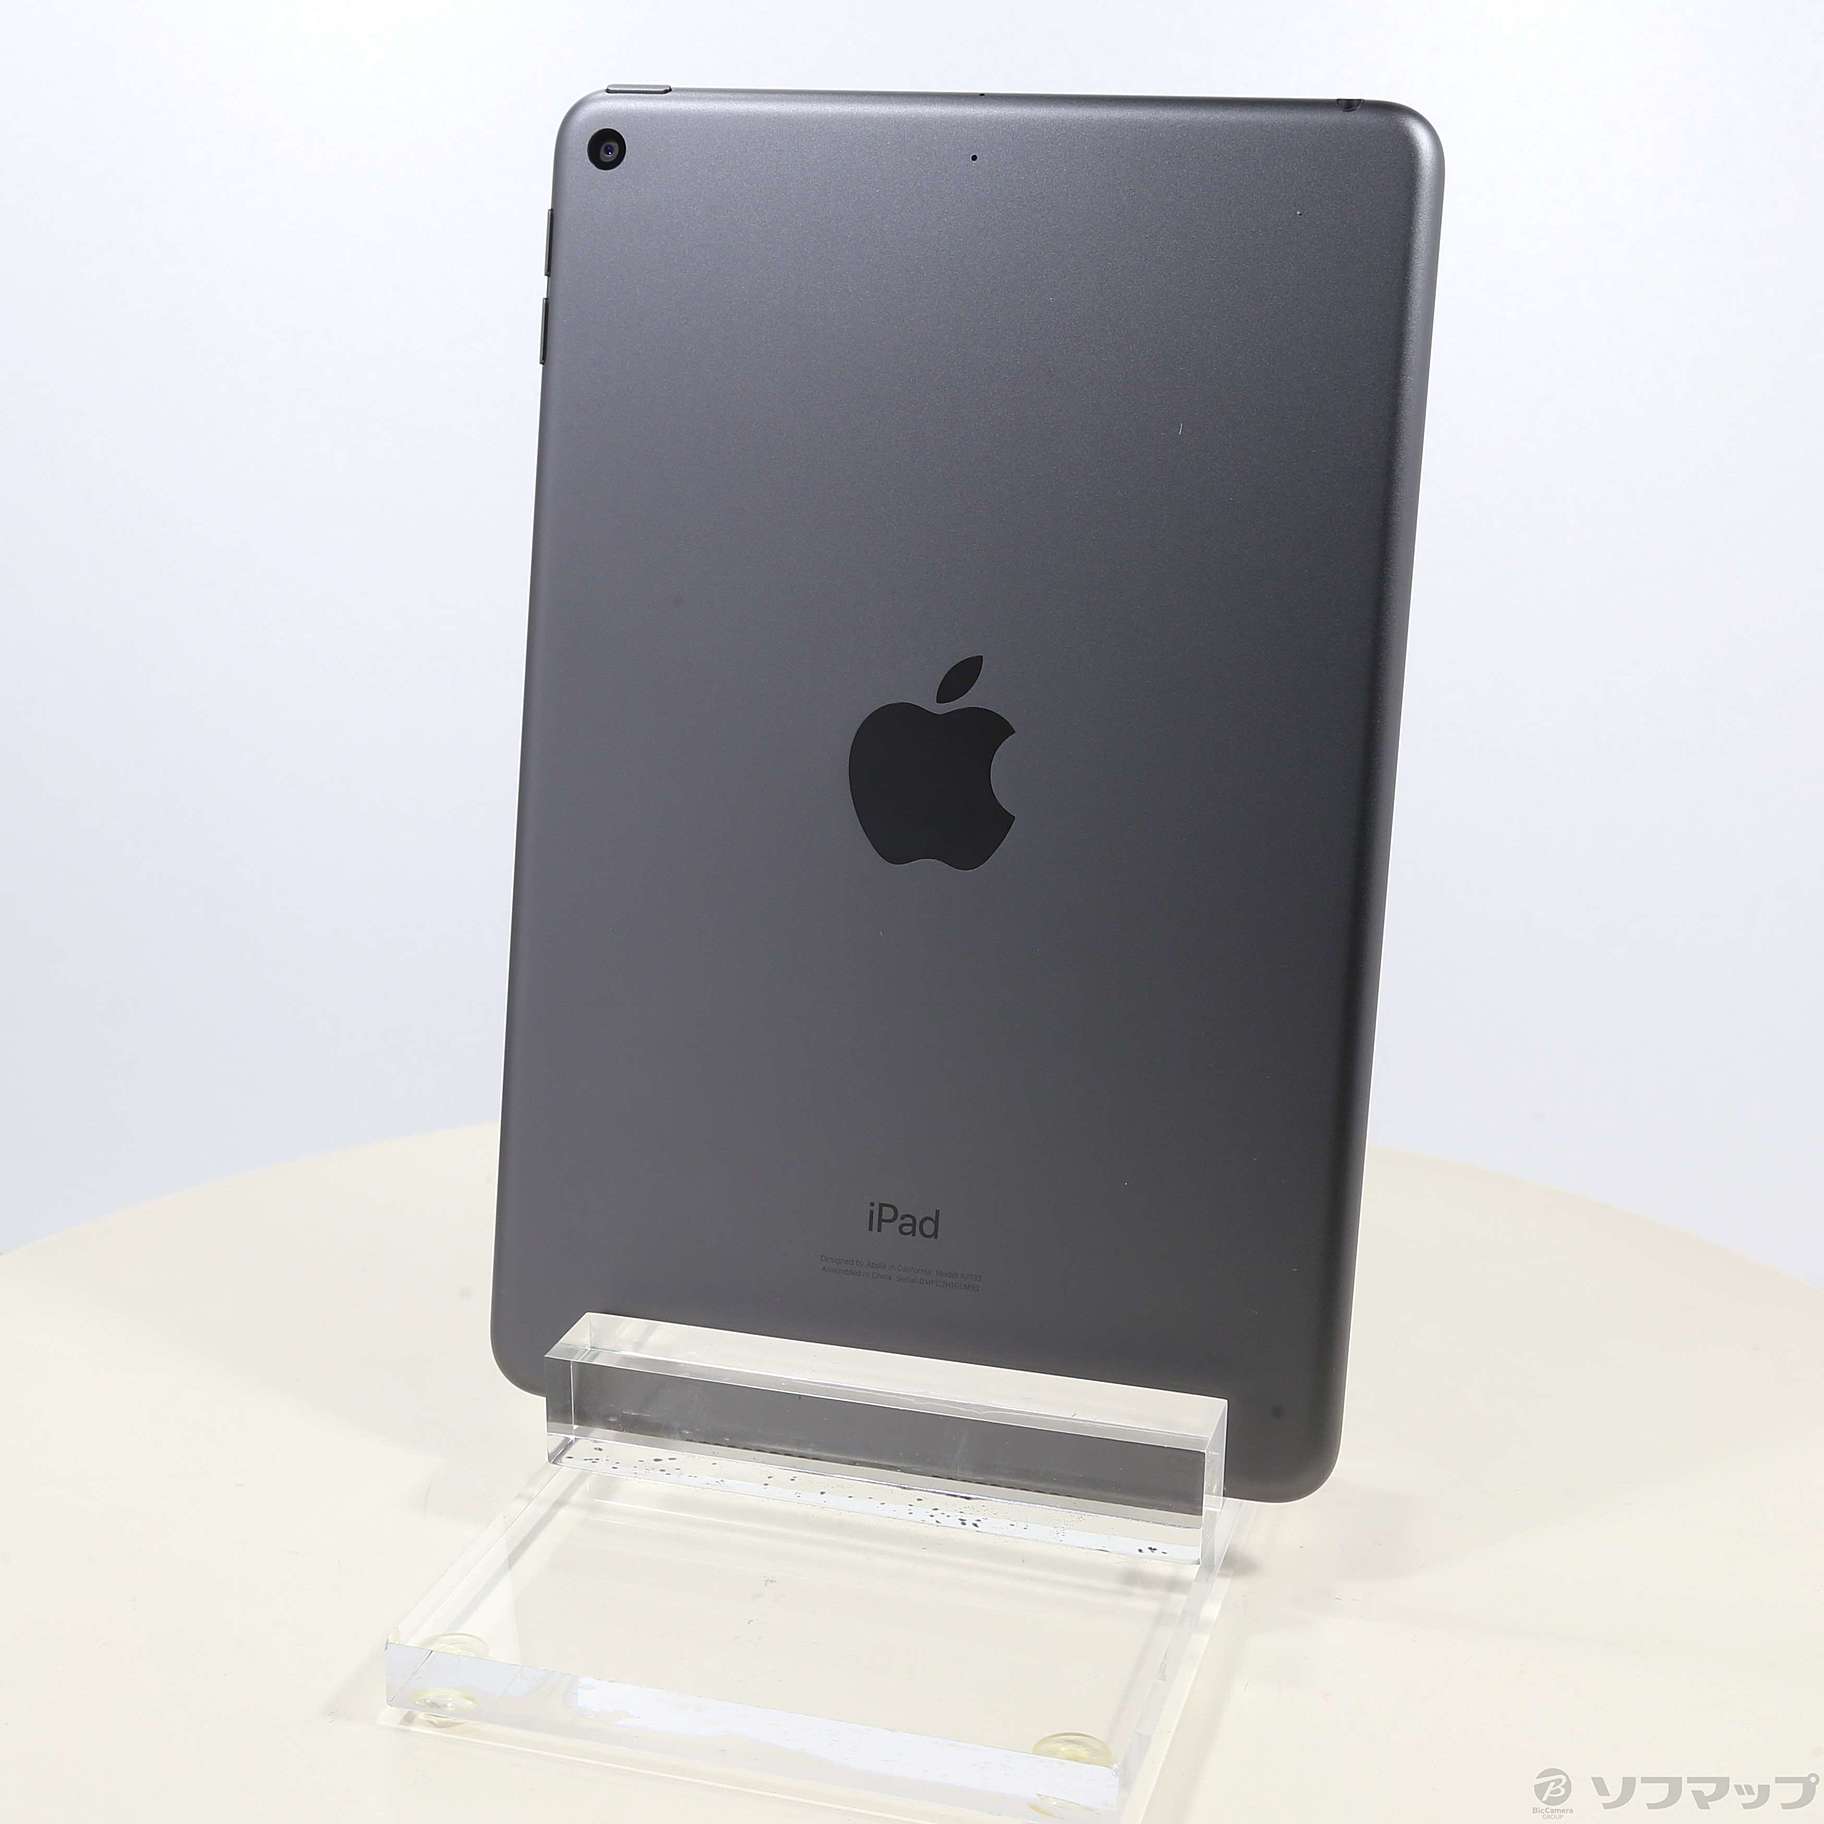 APPLE iPad IPAD 64GB Wifiモデル 箱付き